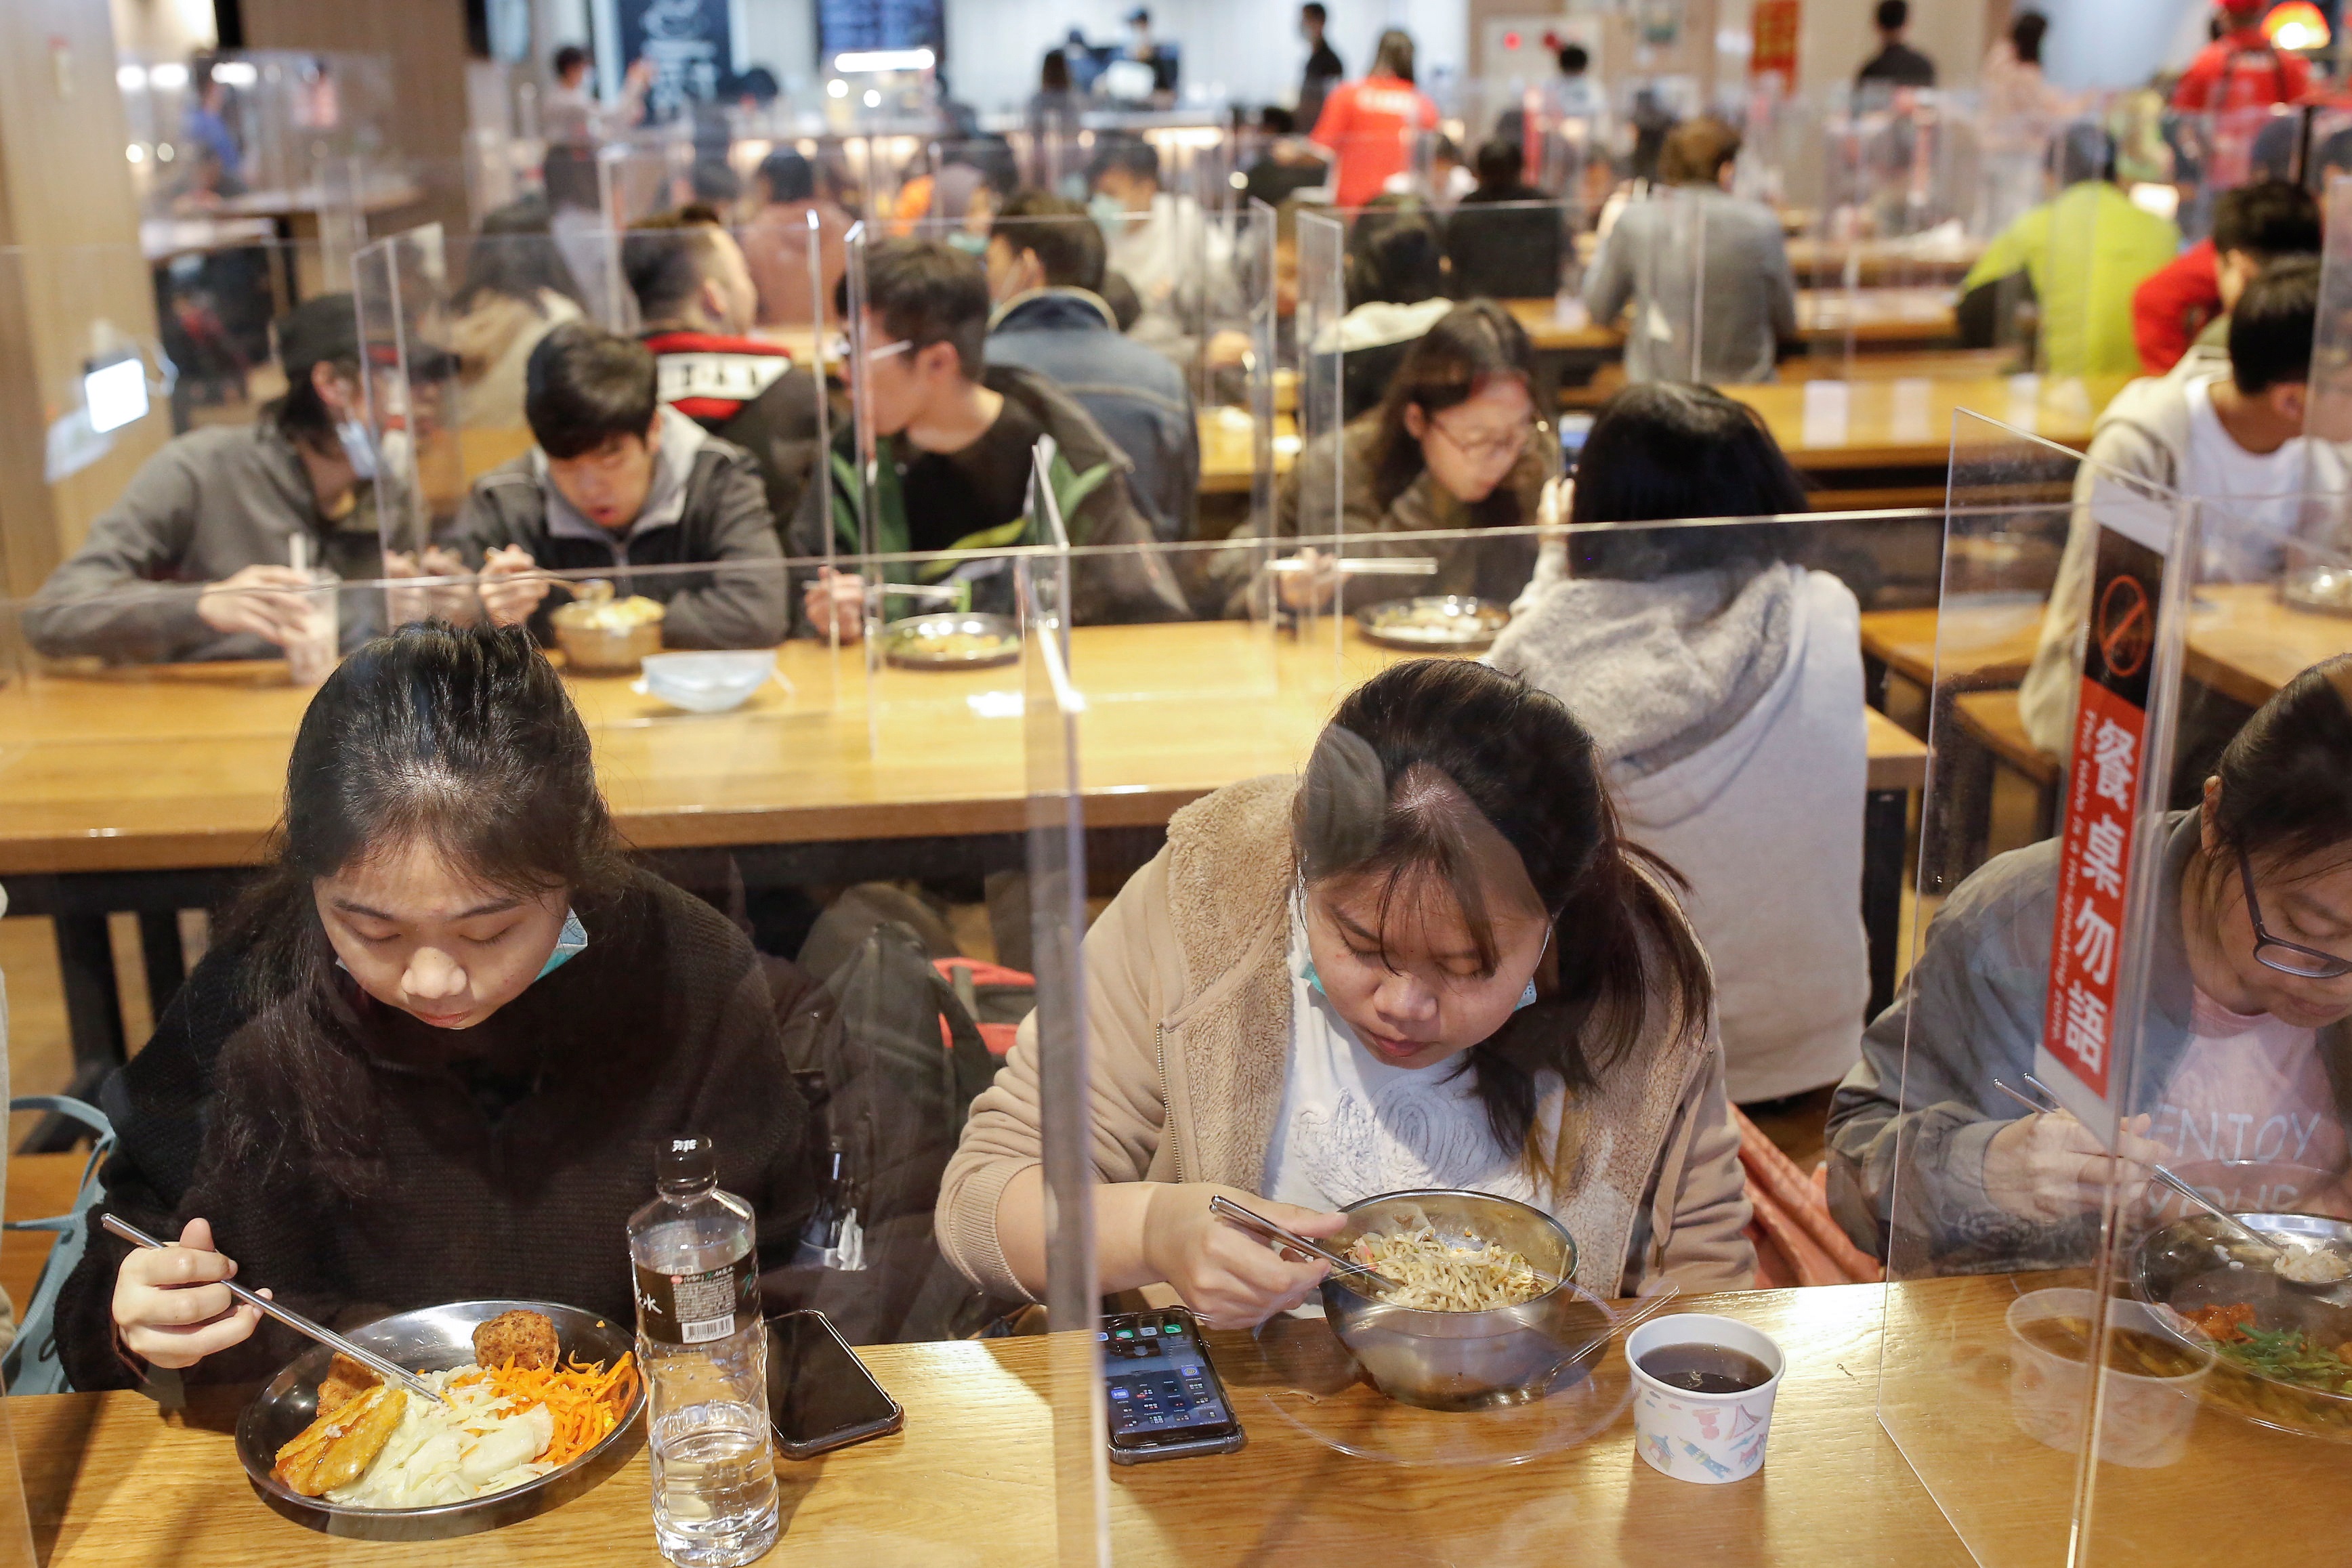 الطلاب يتناولون طعام الغداء بين الفواصل لحمايتهم من مرض فيروس كورونا في مقصف جامعة تايوان الوطنية للعلوم والتكنولوجيا في تايبيه (رويترز)